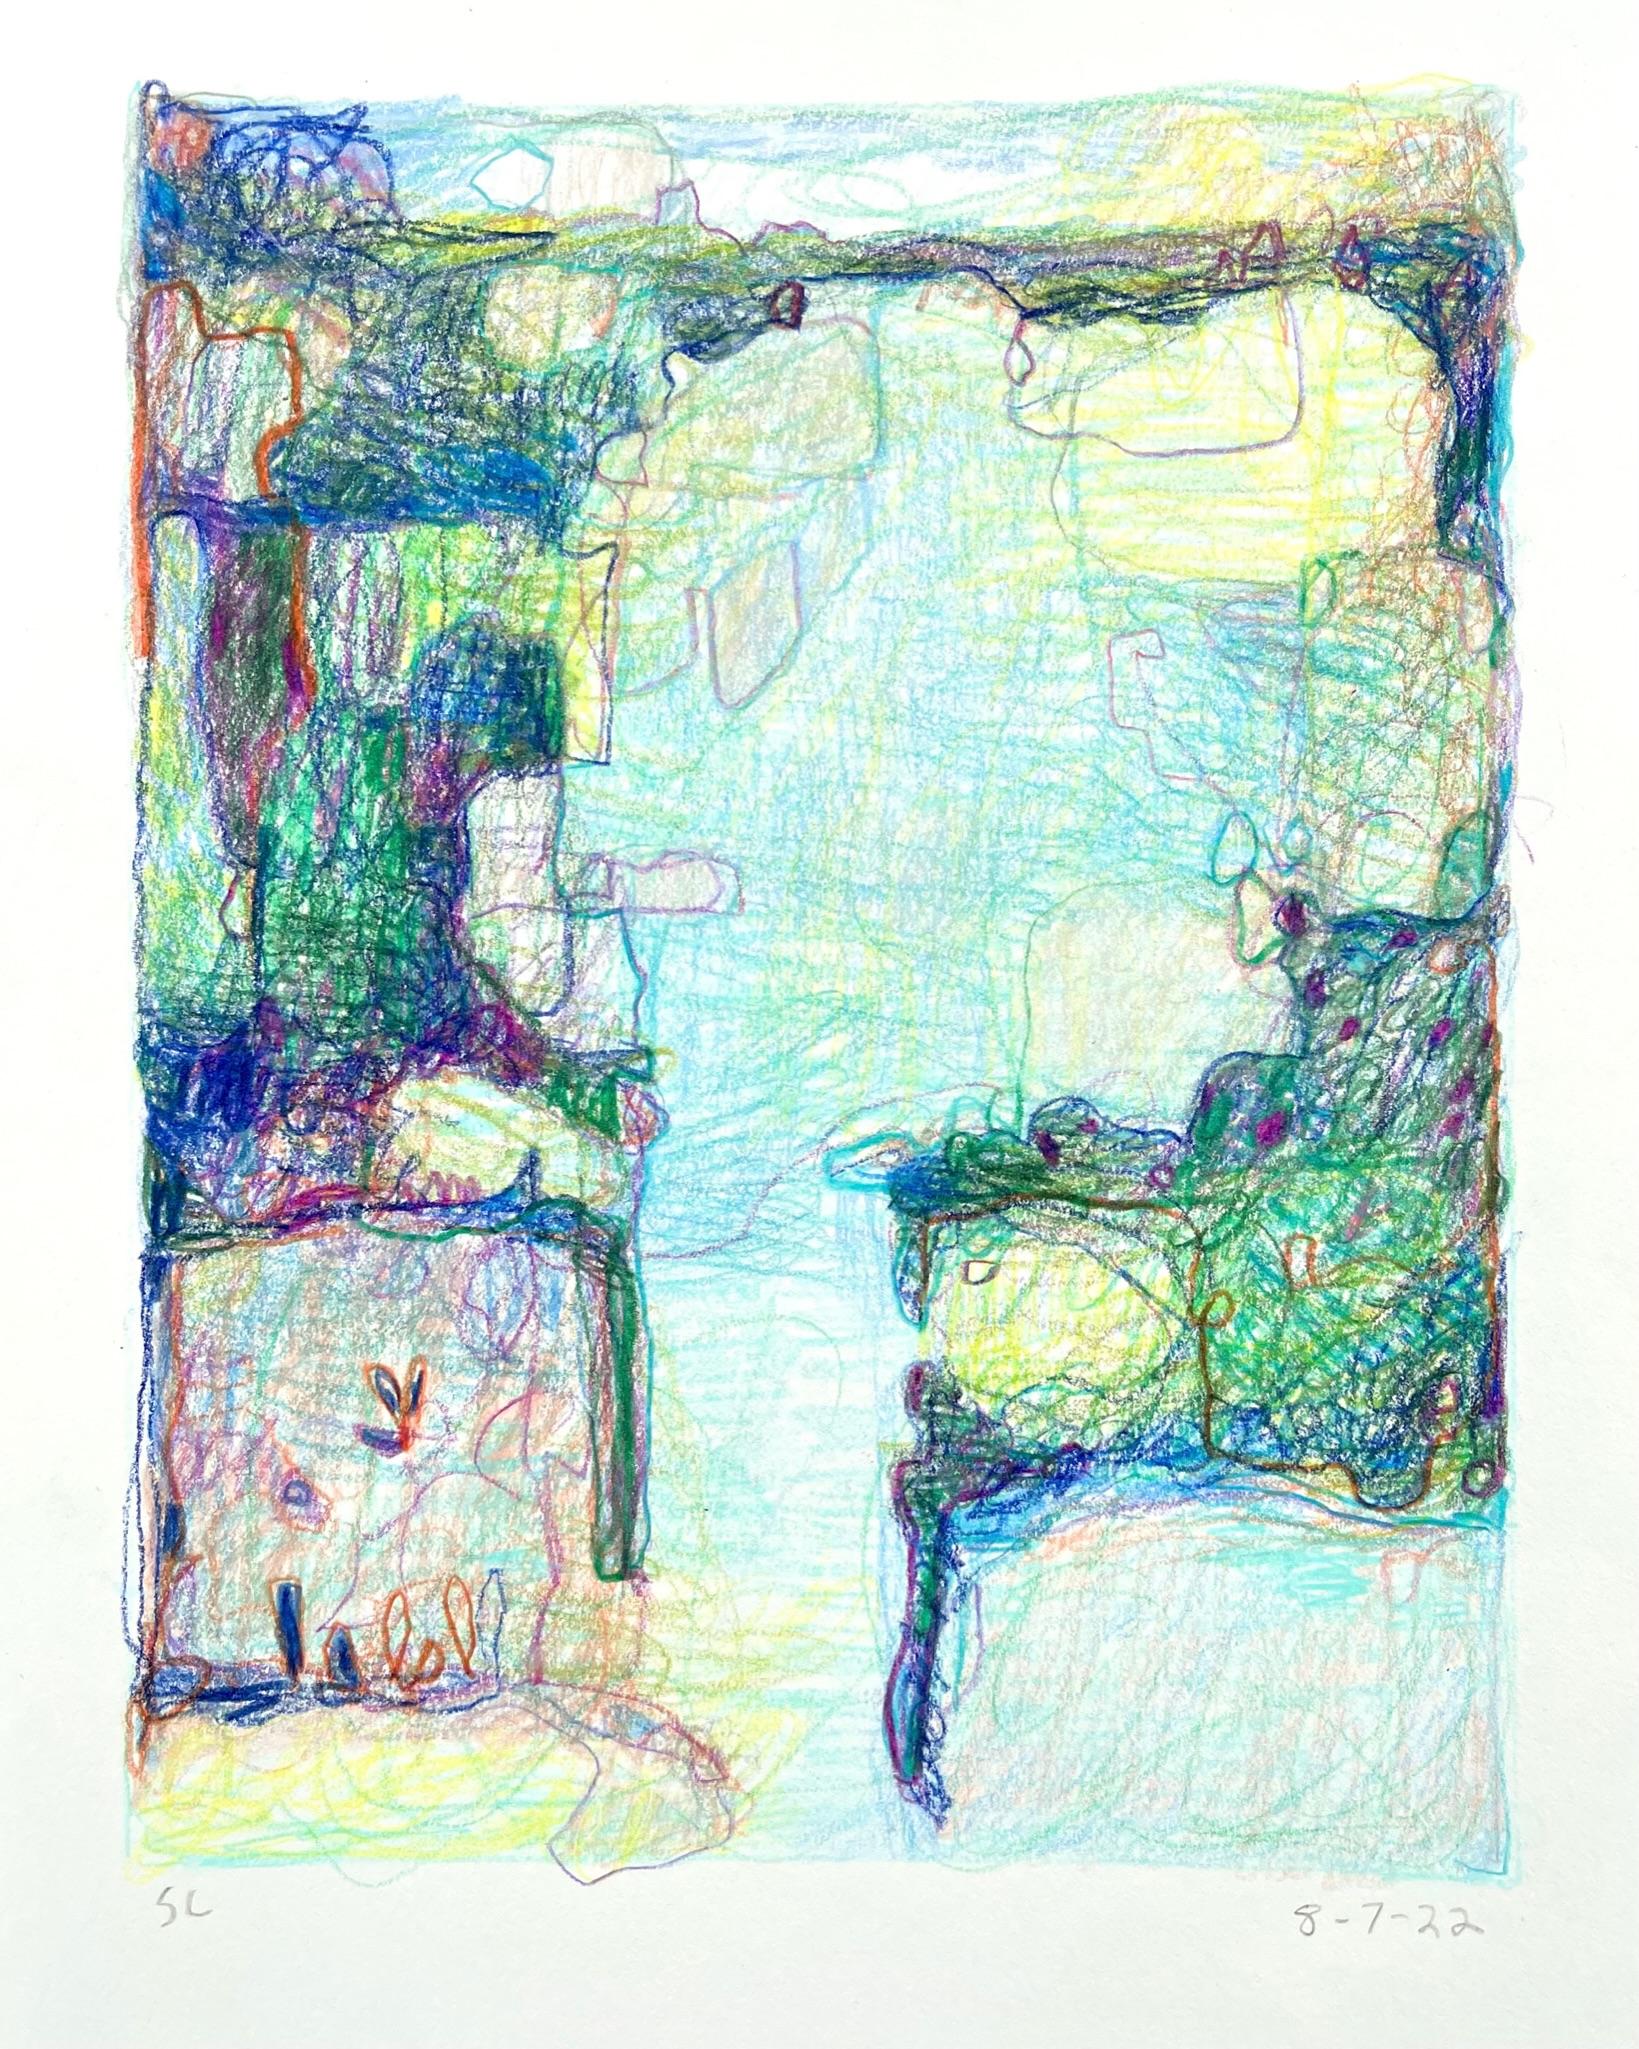 8-7-22, dessin de paysage abstrait impressionniste au crayon en couleur